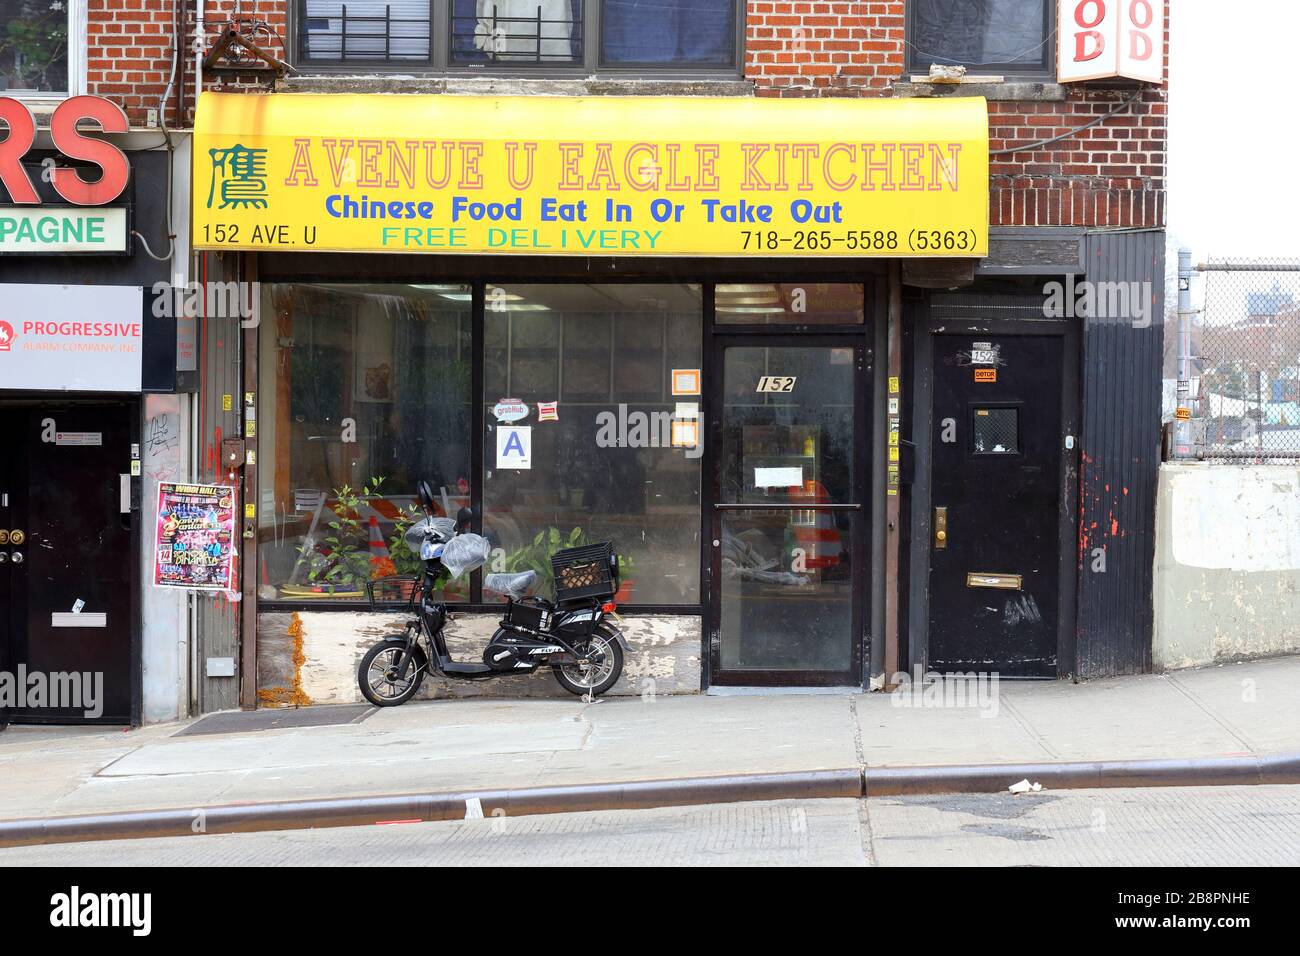 Avenue U Eagle Kitchen, 152 Avenue U, Brooklyn, NY. Vue extérieure d'un restaurant chinois à emporter à Gravesend. Banque D'Images